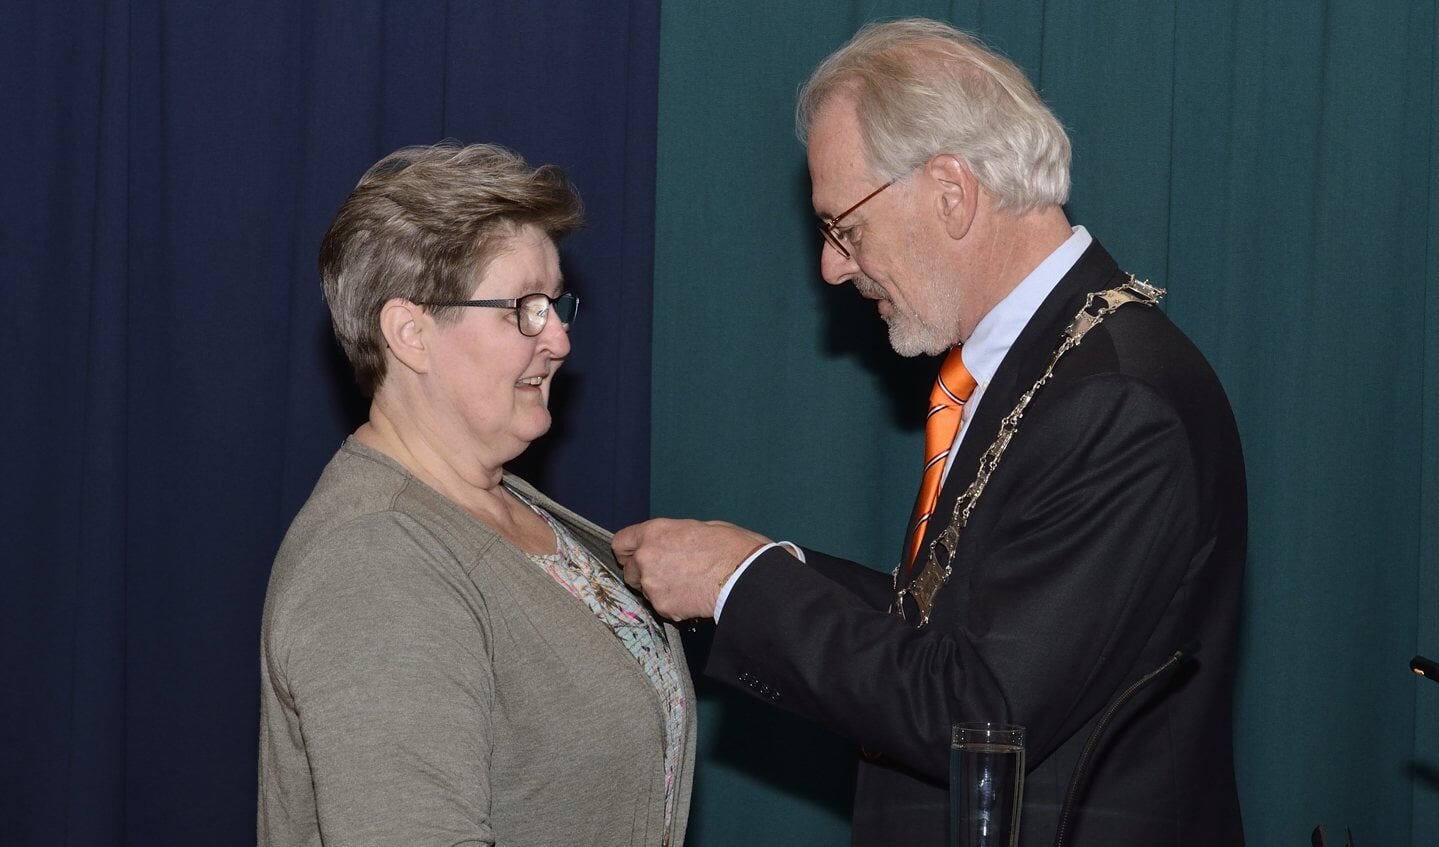 Koninklijke onderscheiding voor mevrouw E.E. van Hannen- Koops Benoemd tot lid in de Orde van Oranje-Nassau